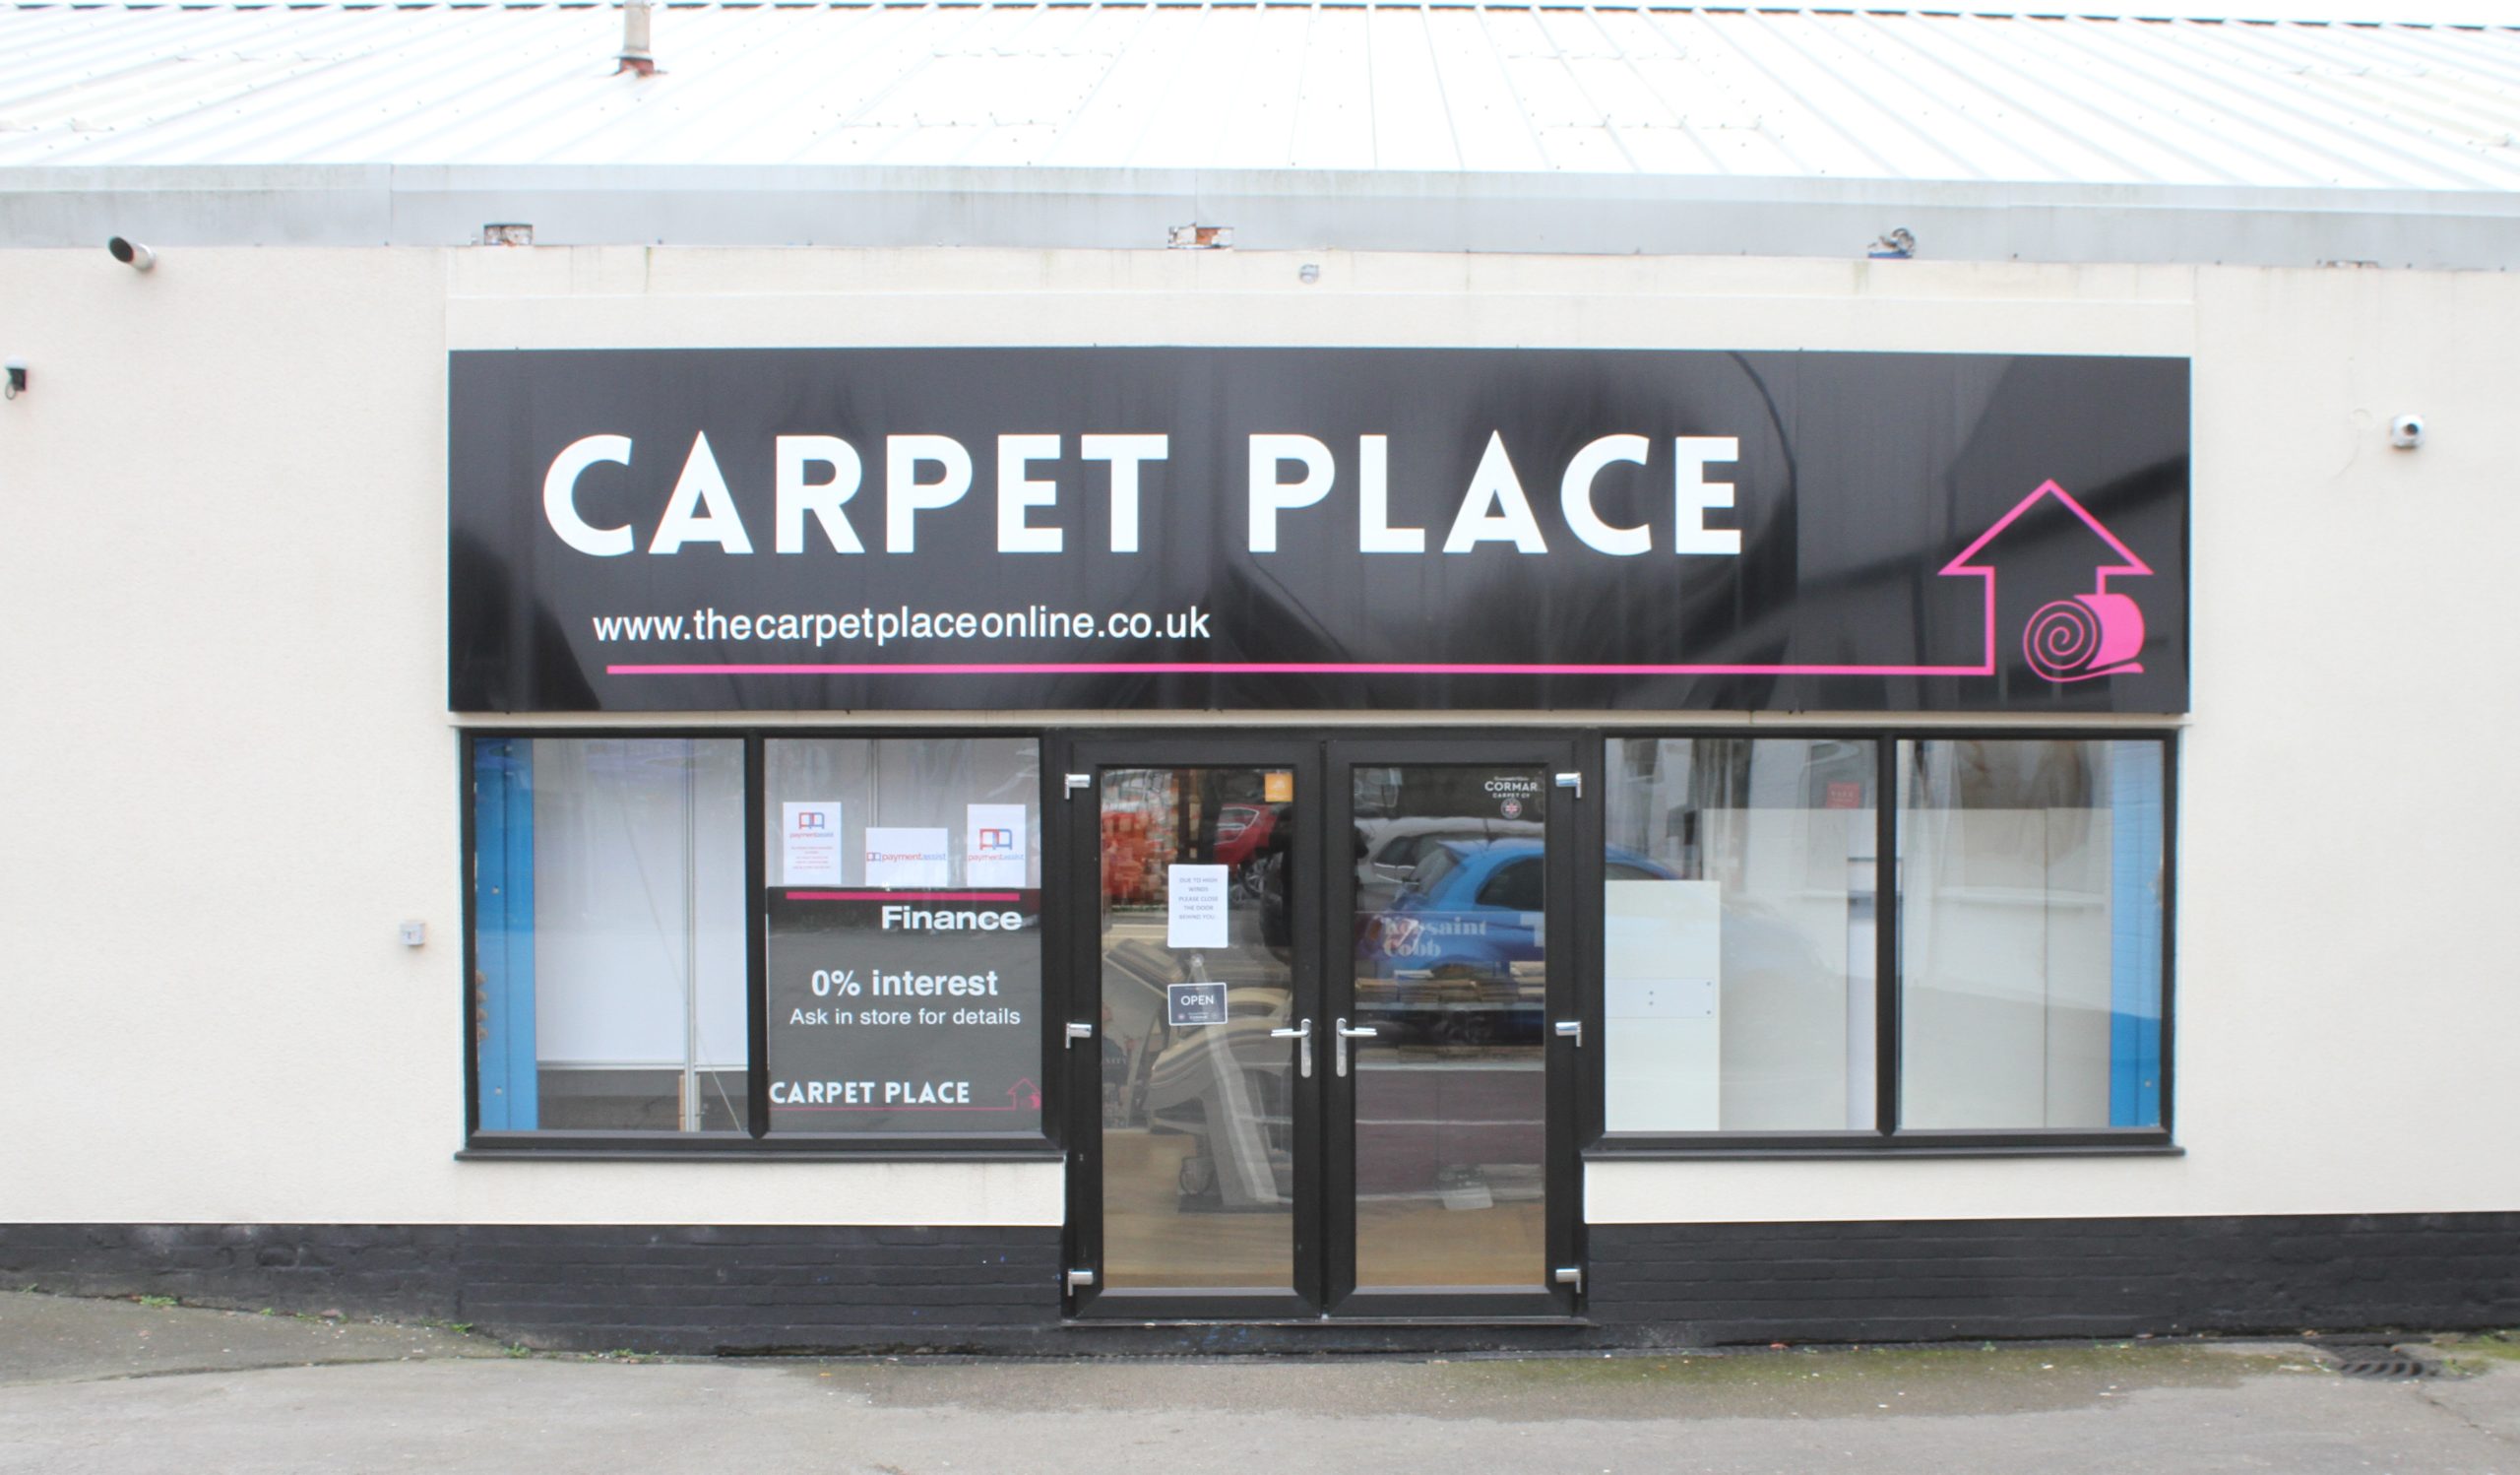 The Carpet Place